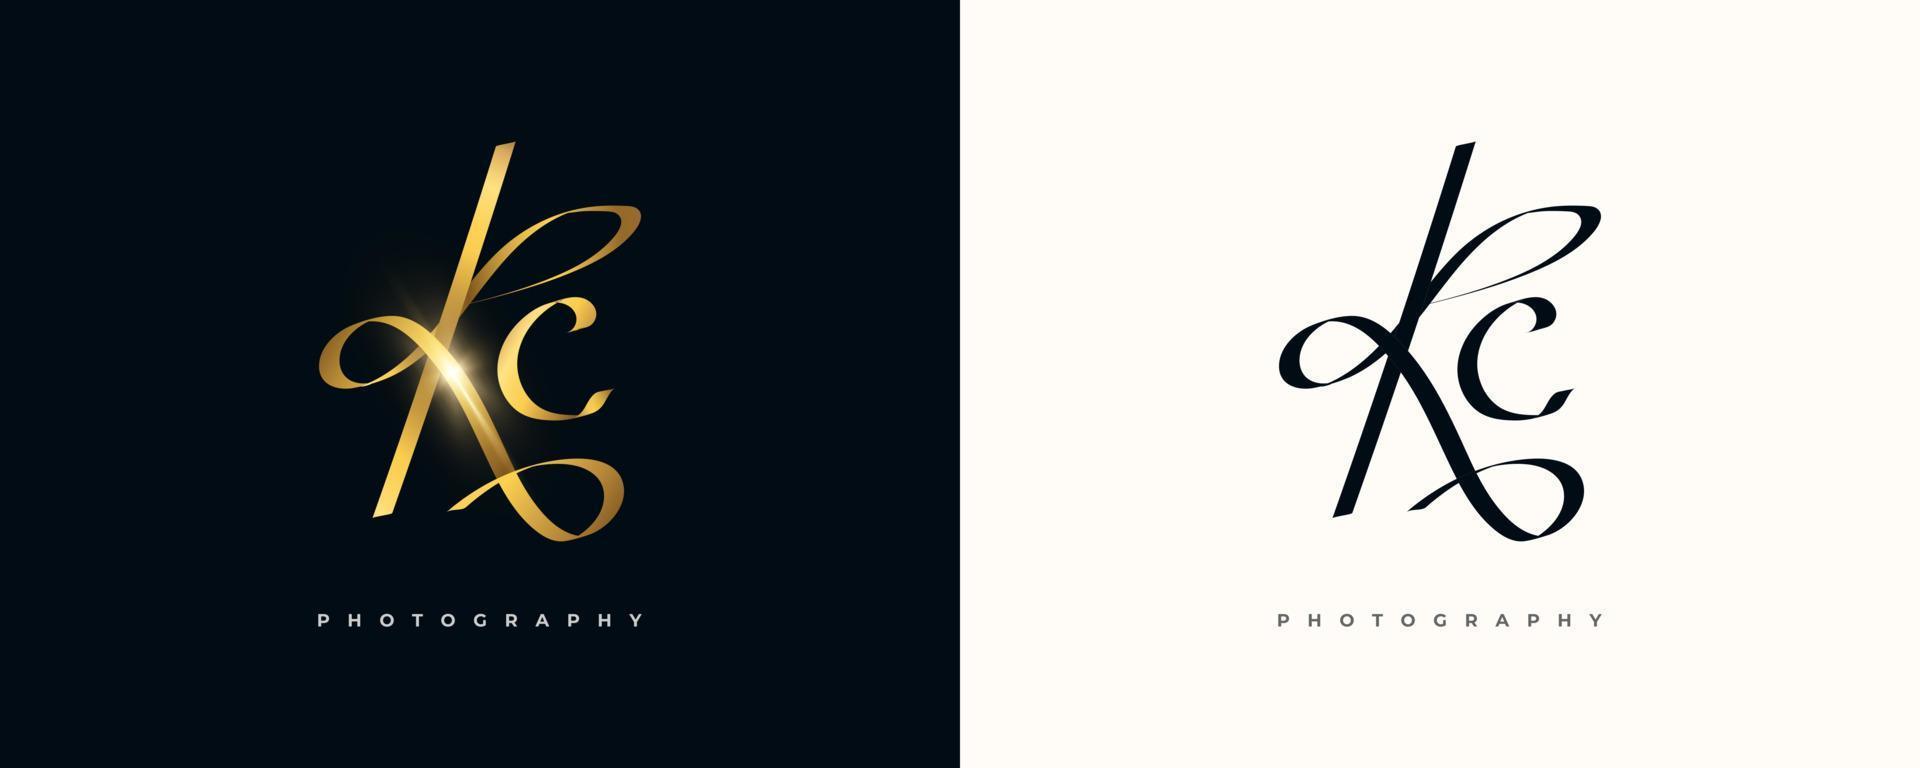 conception initiale du logo de la signature kc avec un style d'écriture doré élégant et minimaliste. création initiale du logo k et c pour le mariage, la mode, les bijoux, la boutique et l'identité de la marque d'entreprise vecteur